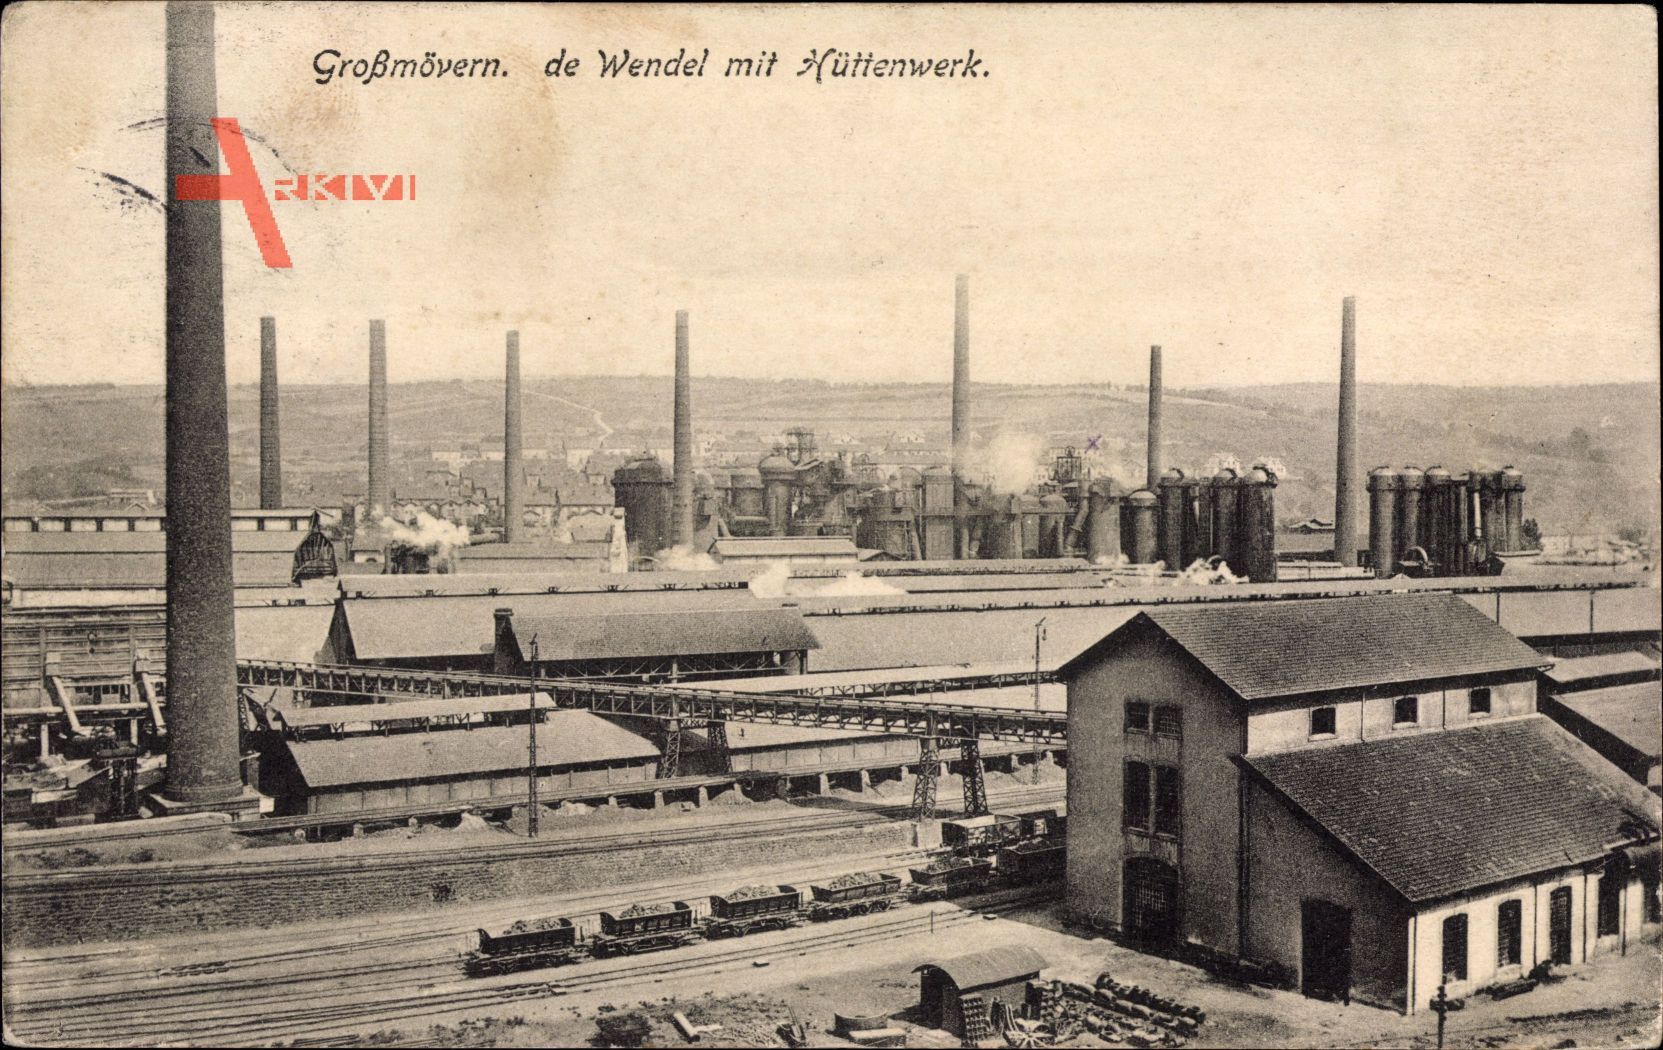 Großmövern Moselle, De Wendel,Blick auf das Hüttenwerk, Güterzug, Schornstein